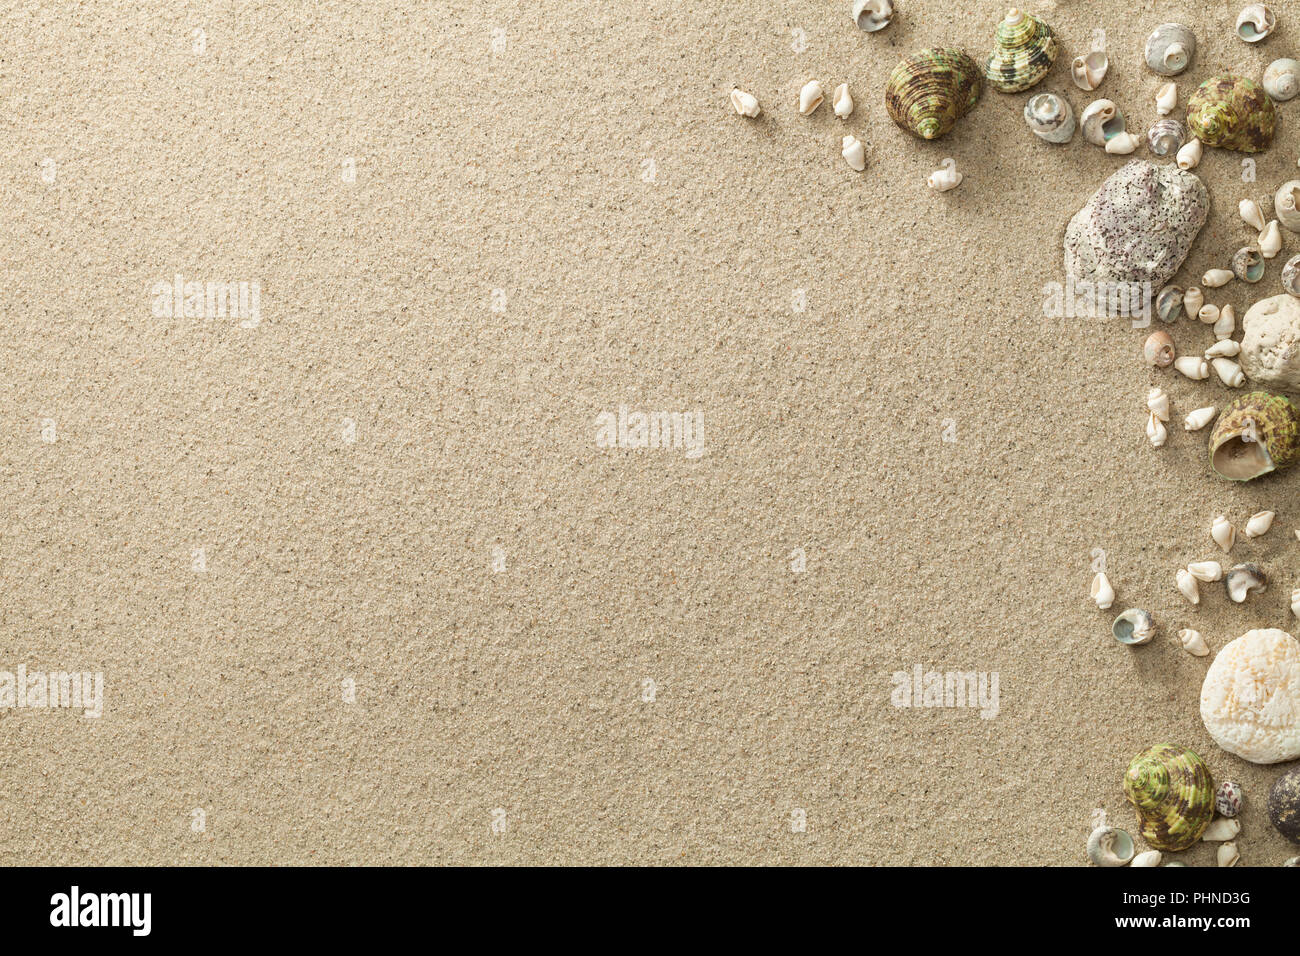 La playa de arena, con conchas y piedras de fondo Foto de stock